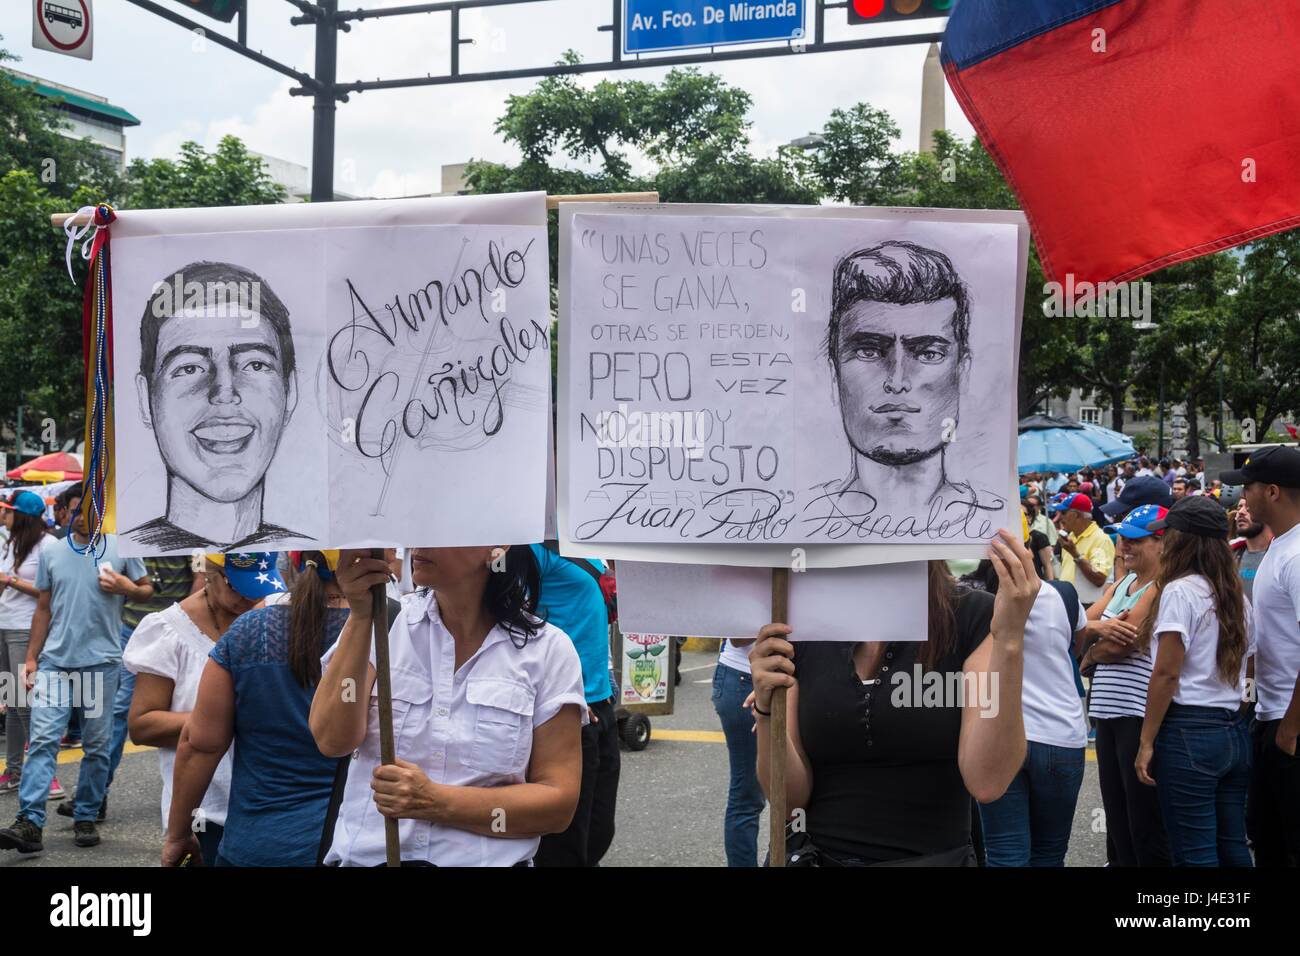 Zwei Frauen tragen Zeichnungen über Juan Pablo Pernalete und Armando Cañizales, junge Menschen, die kürzlich an den Protesten von feuert Tränengas direkt an seinem Körper, von der Polizei und Nationalgarde getötet. Schlamm (Bureau of Unity) marschiert zusammen mit Tausenden der Venezolaner gegen die verfassungsgebende Versammlung in Caracas. Mai, 8.2017 Stockfoto